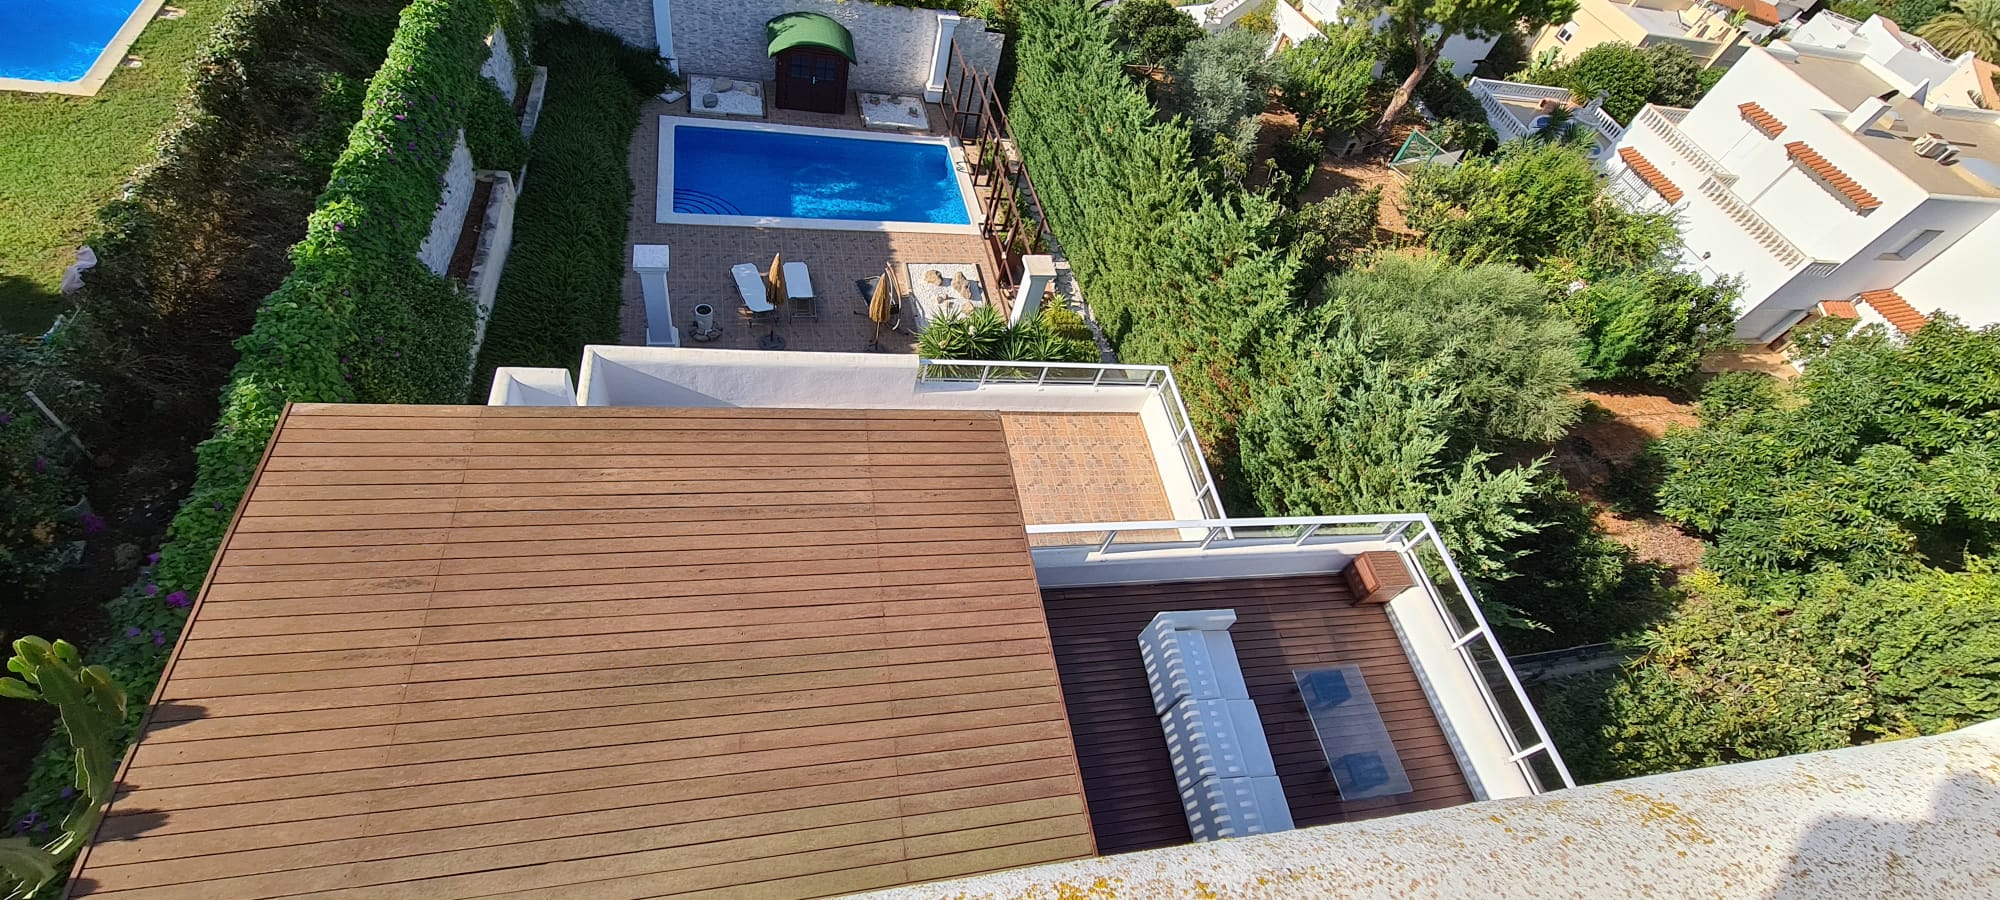 Modern villa with views in the town of Santa Eulalia del Rio